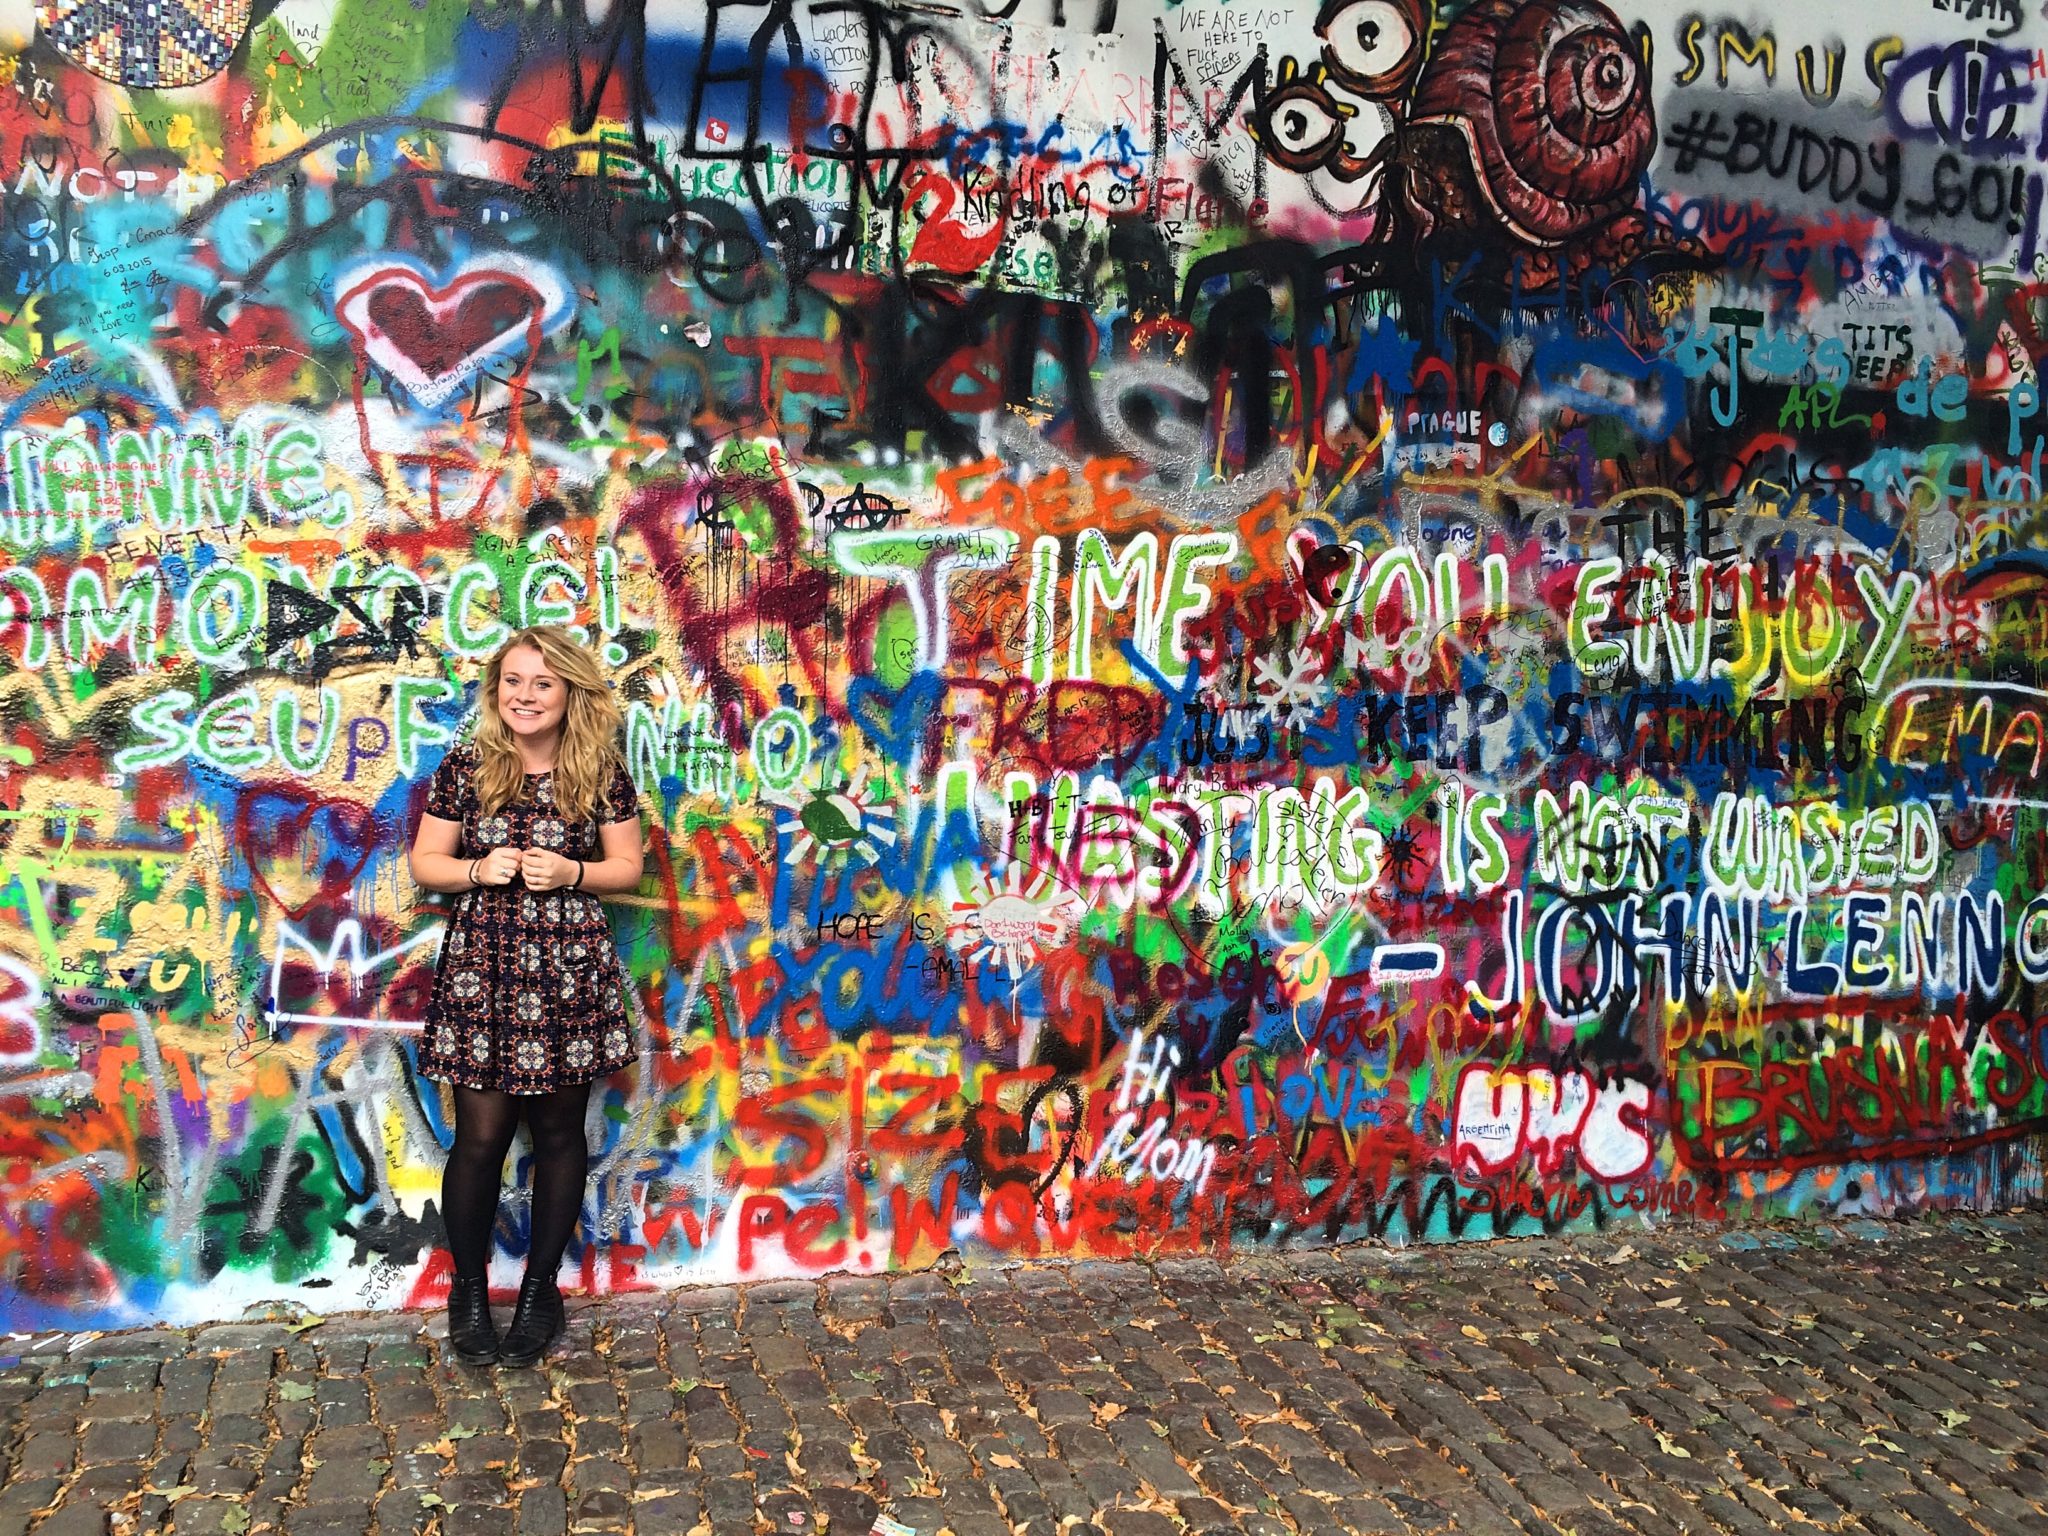 Prague - John Lennon Wall